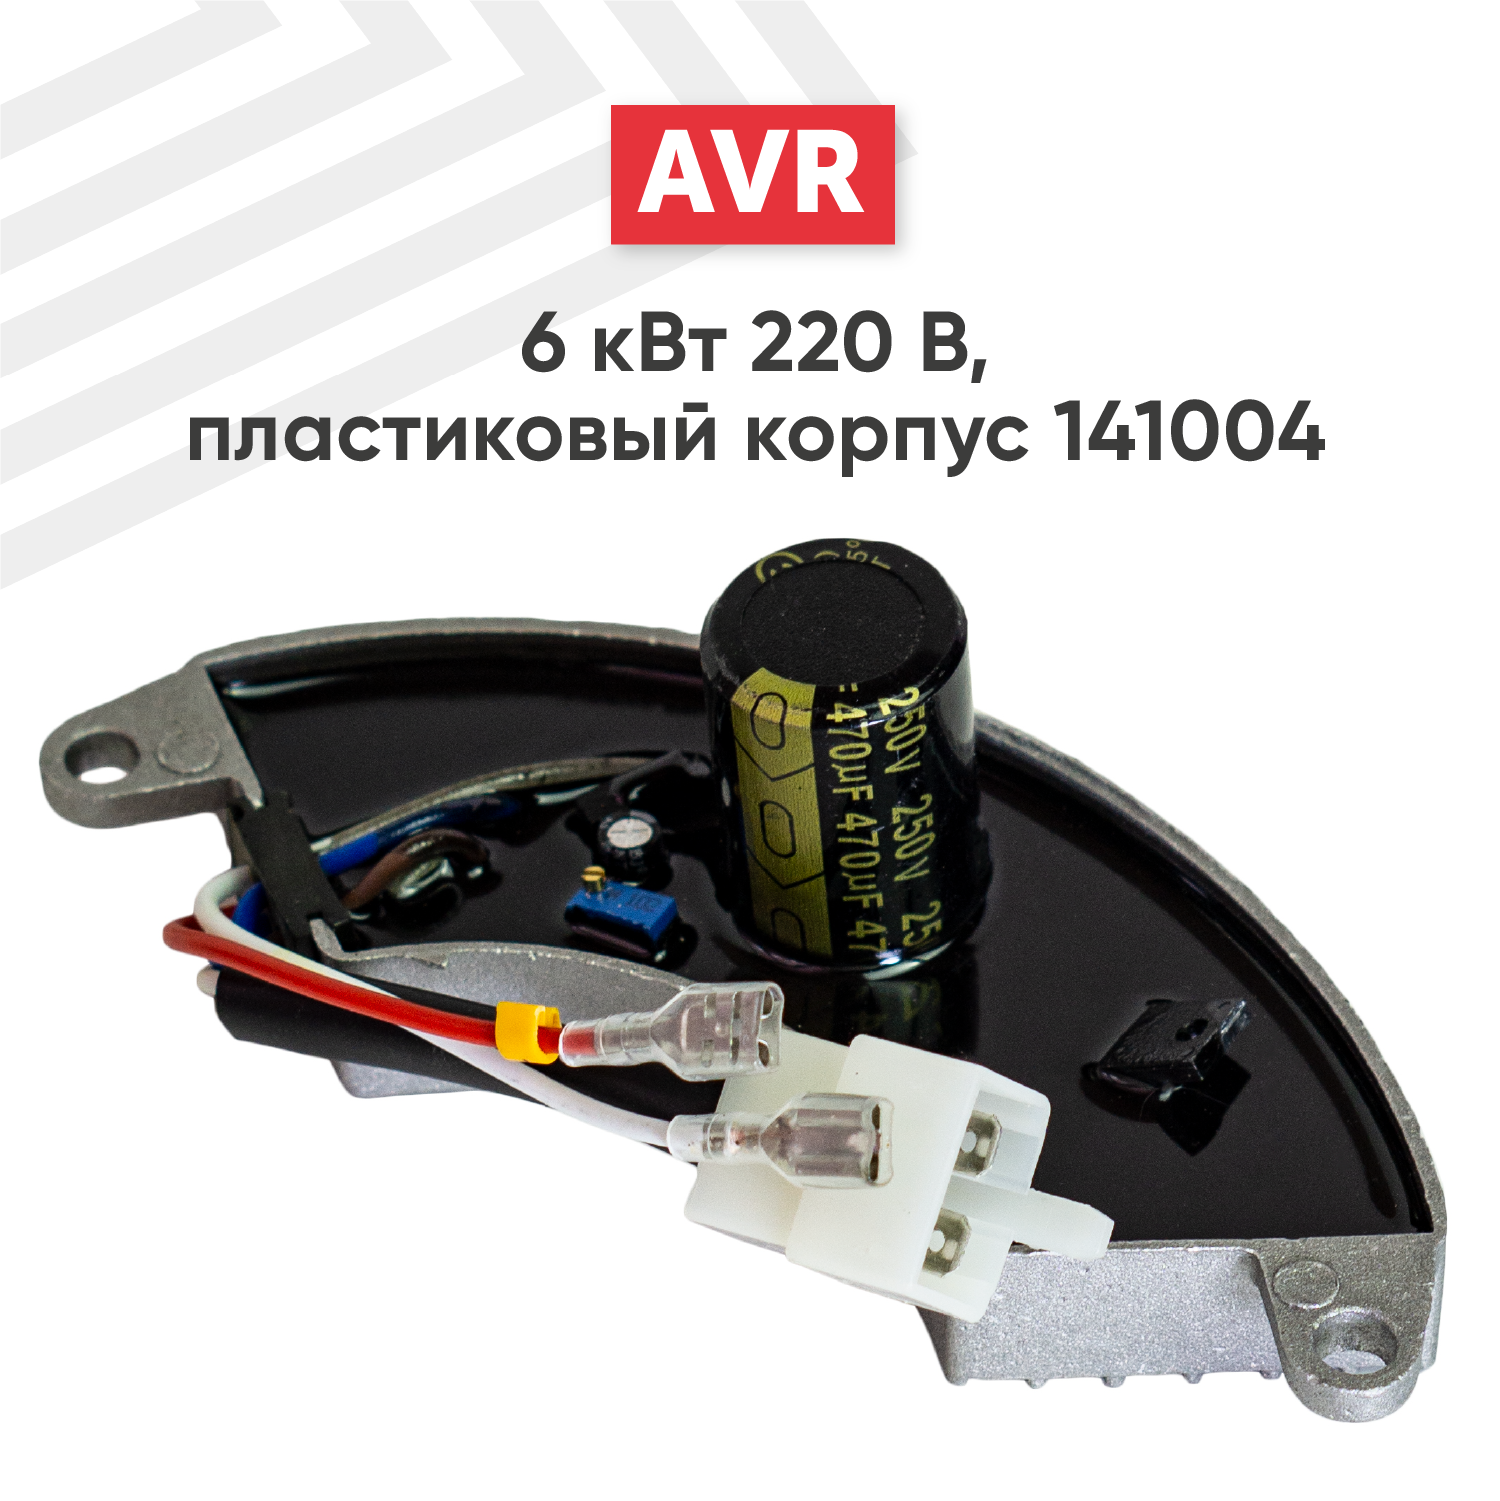 Автоматический регулятор переменного напряжения 220В (блок AVR) для генератора бензоинструмента, 6 кВт, пластиковый корпус, 141004